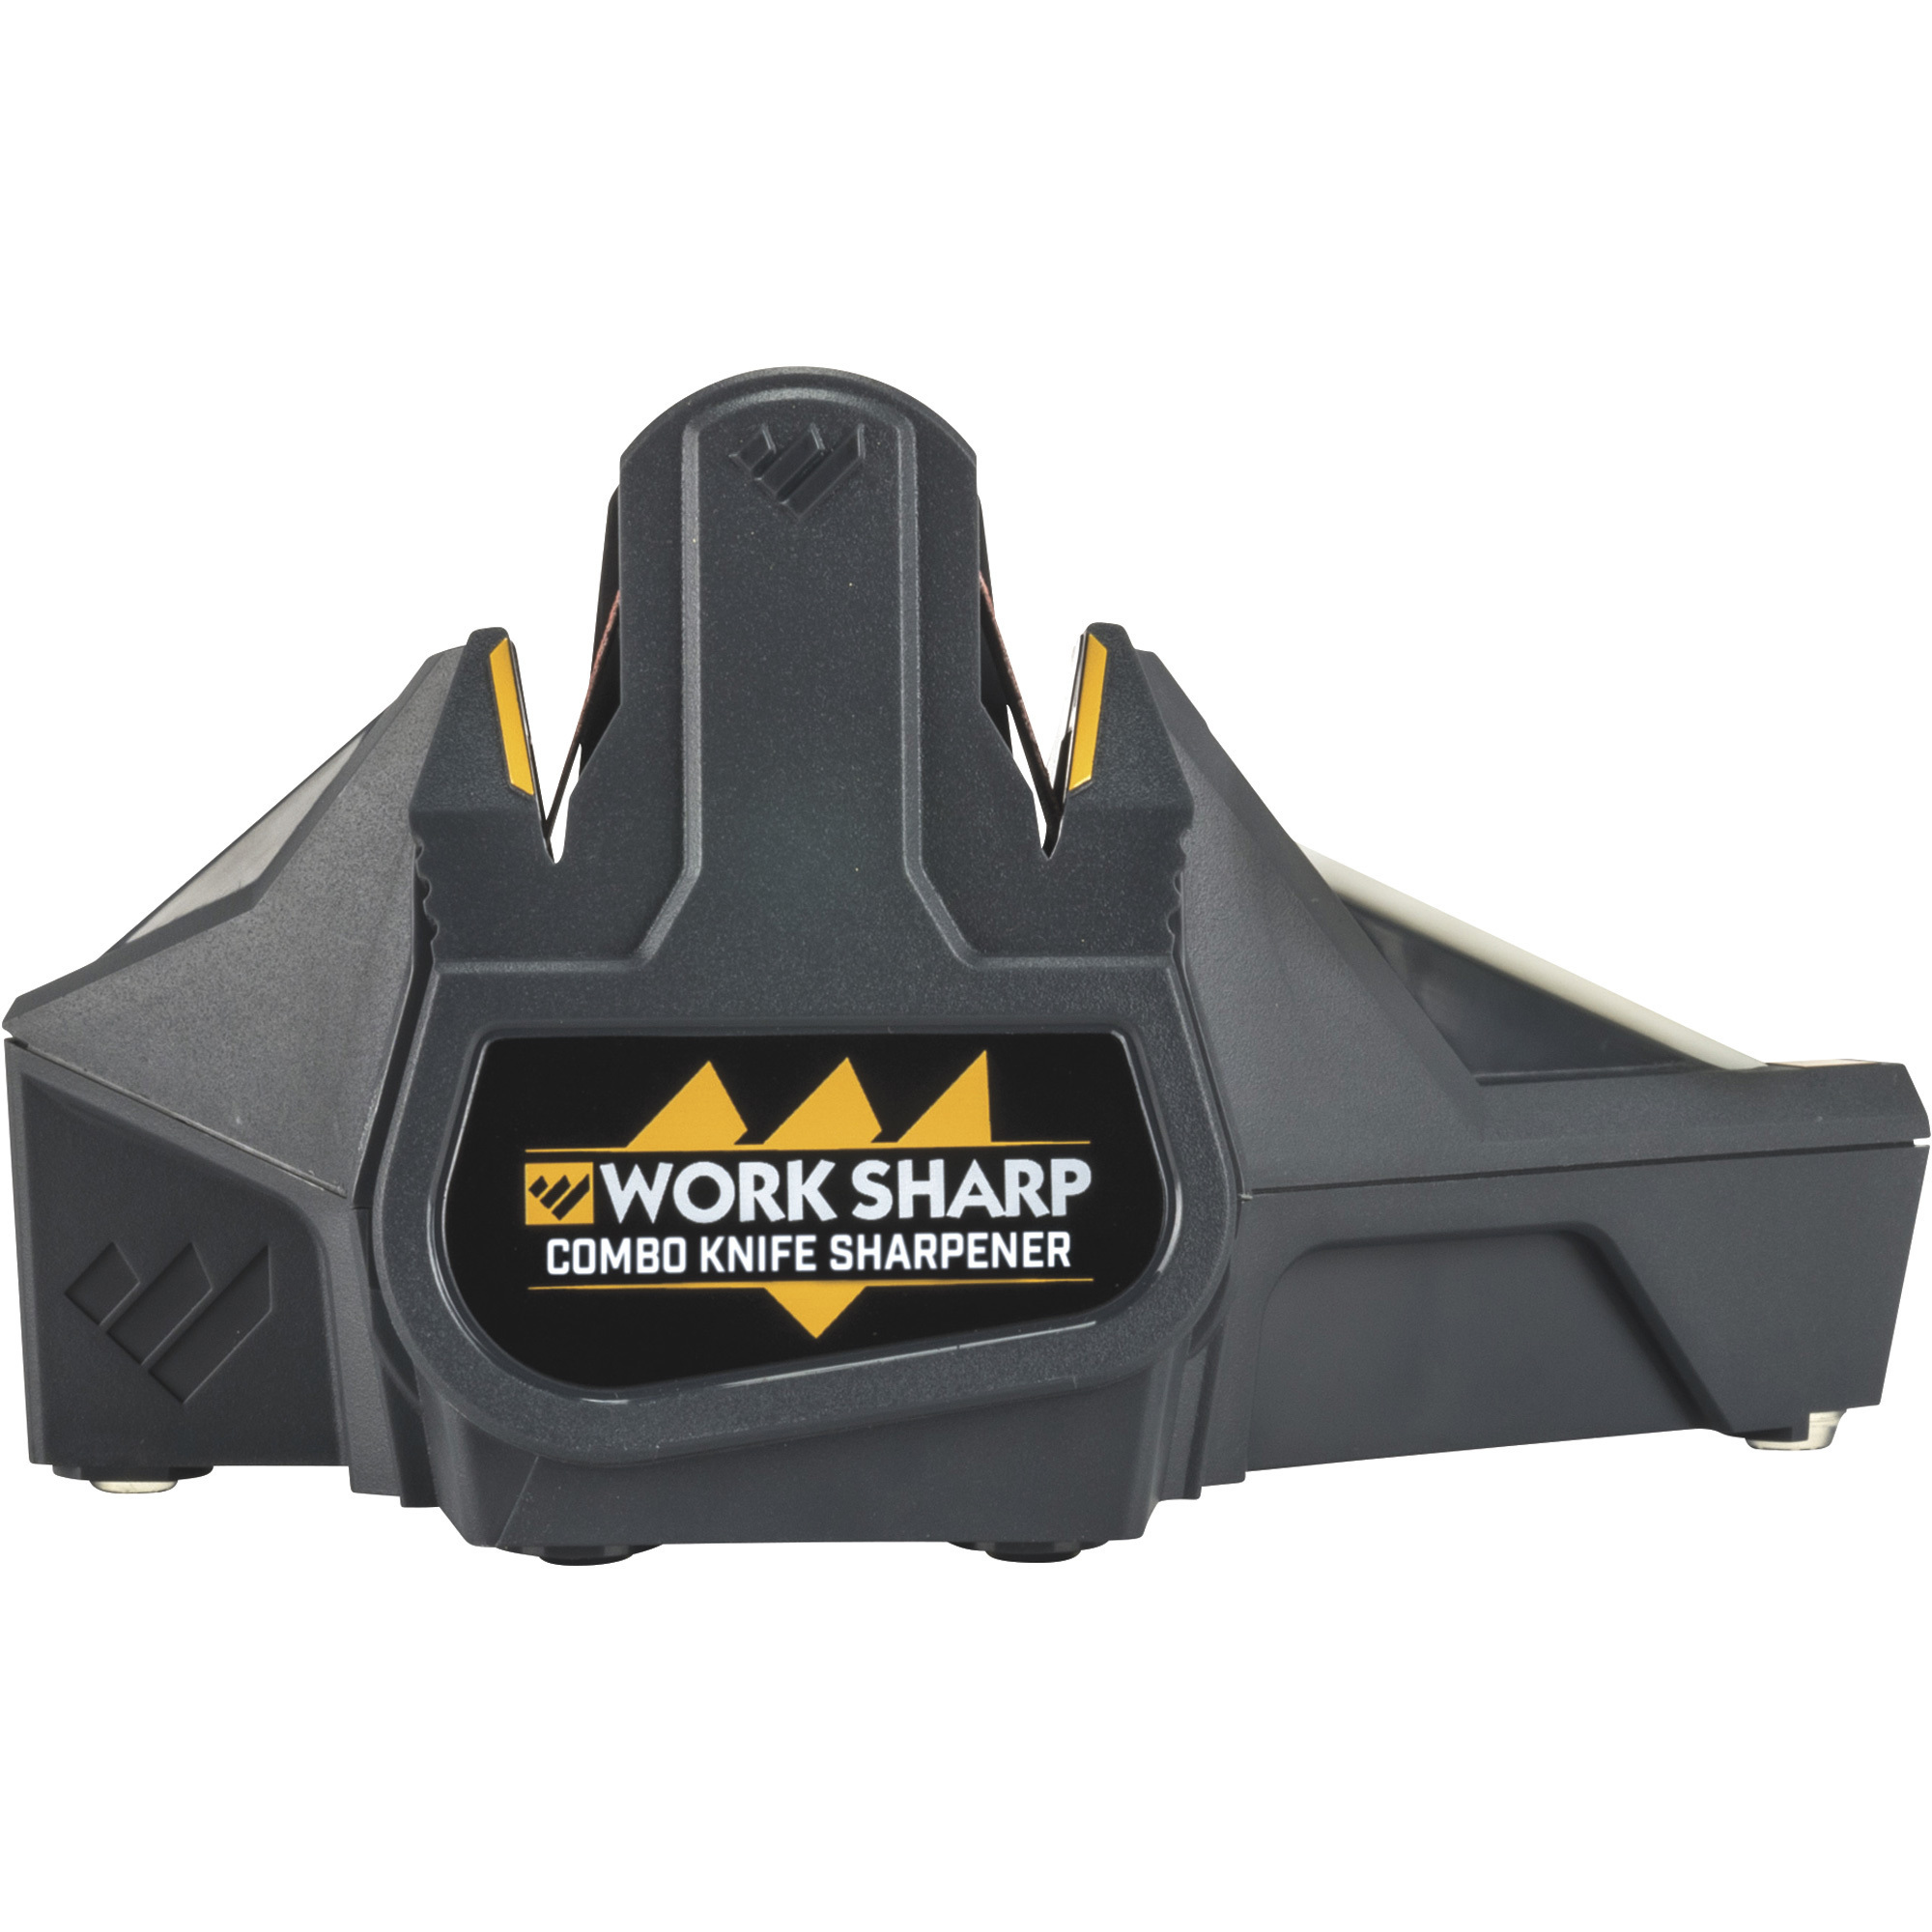 Work Sharp Combo Knife Sharpener, Model WSCMB